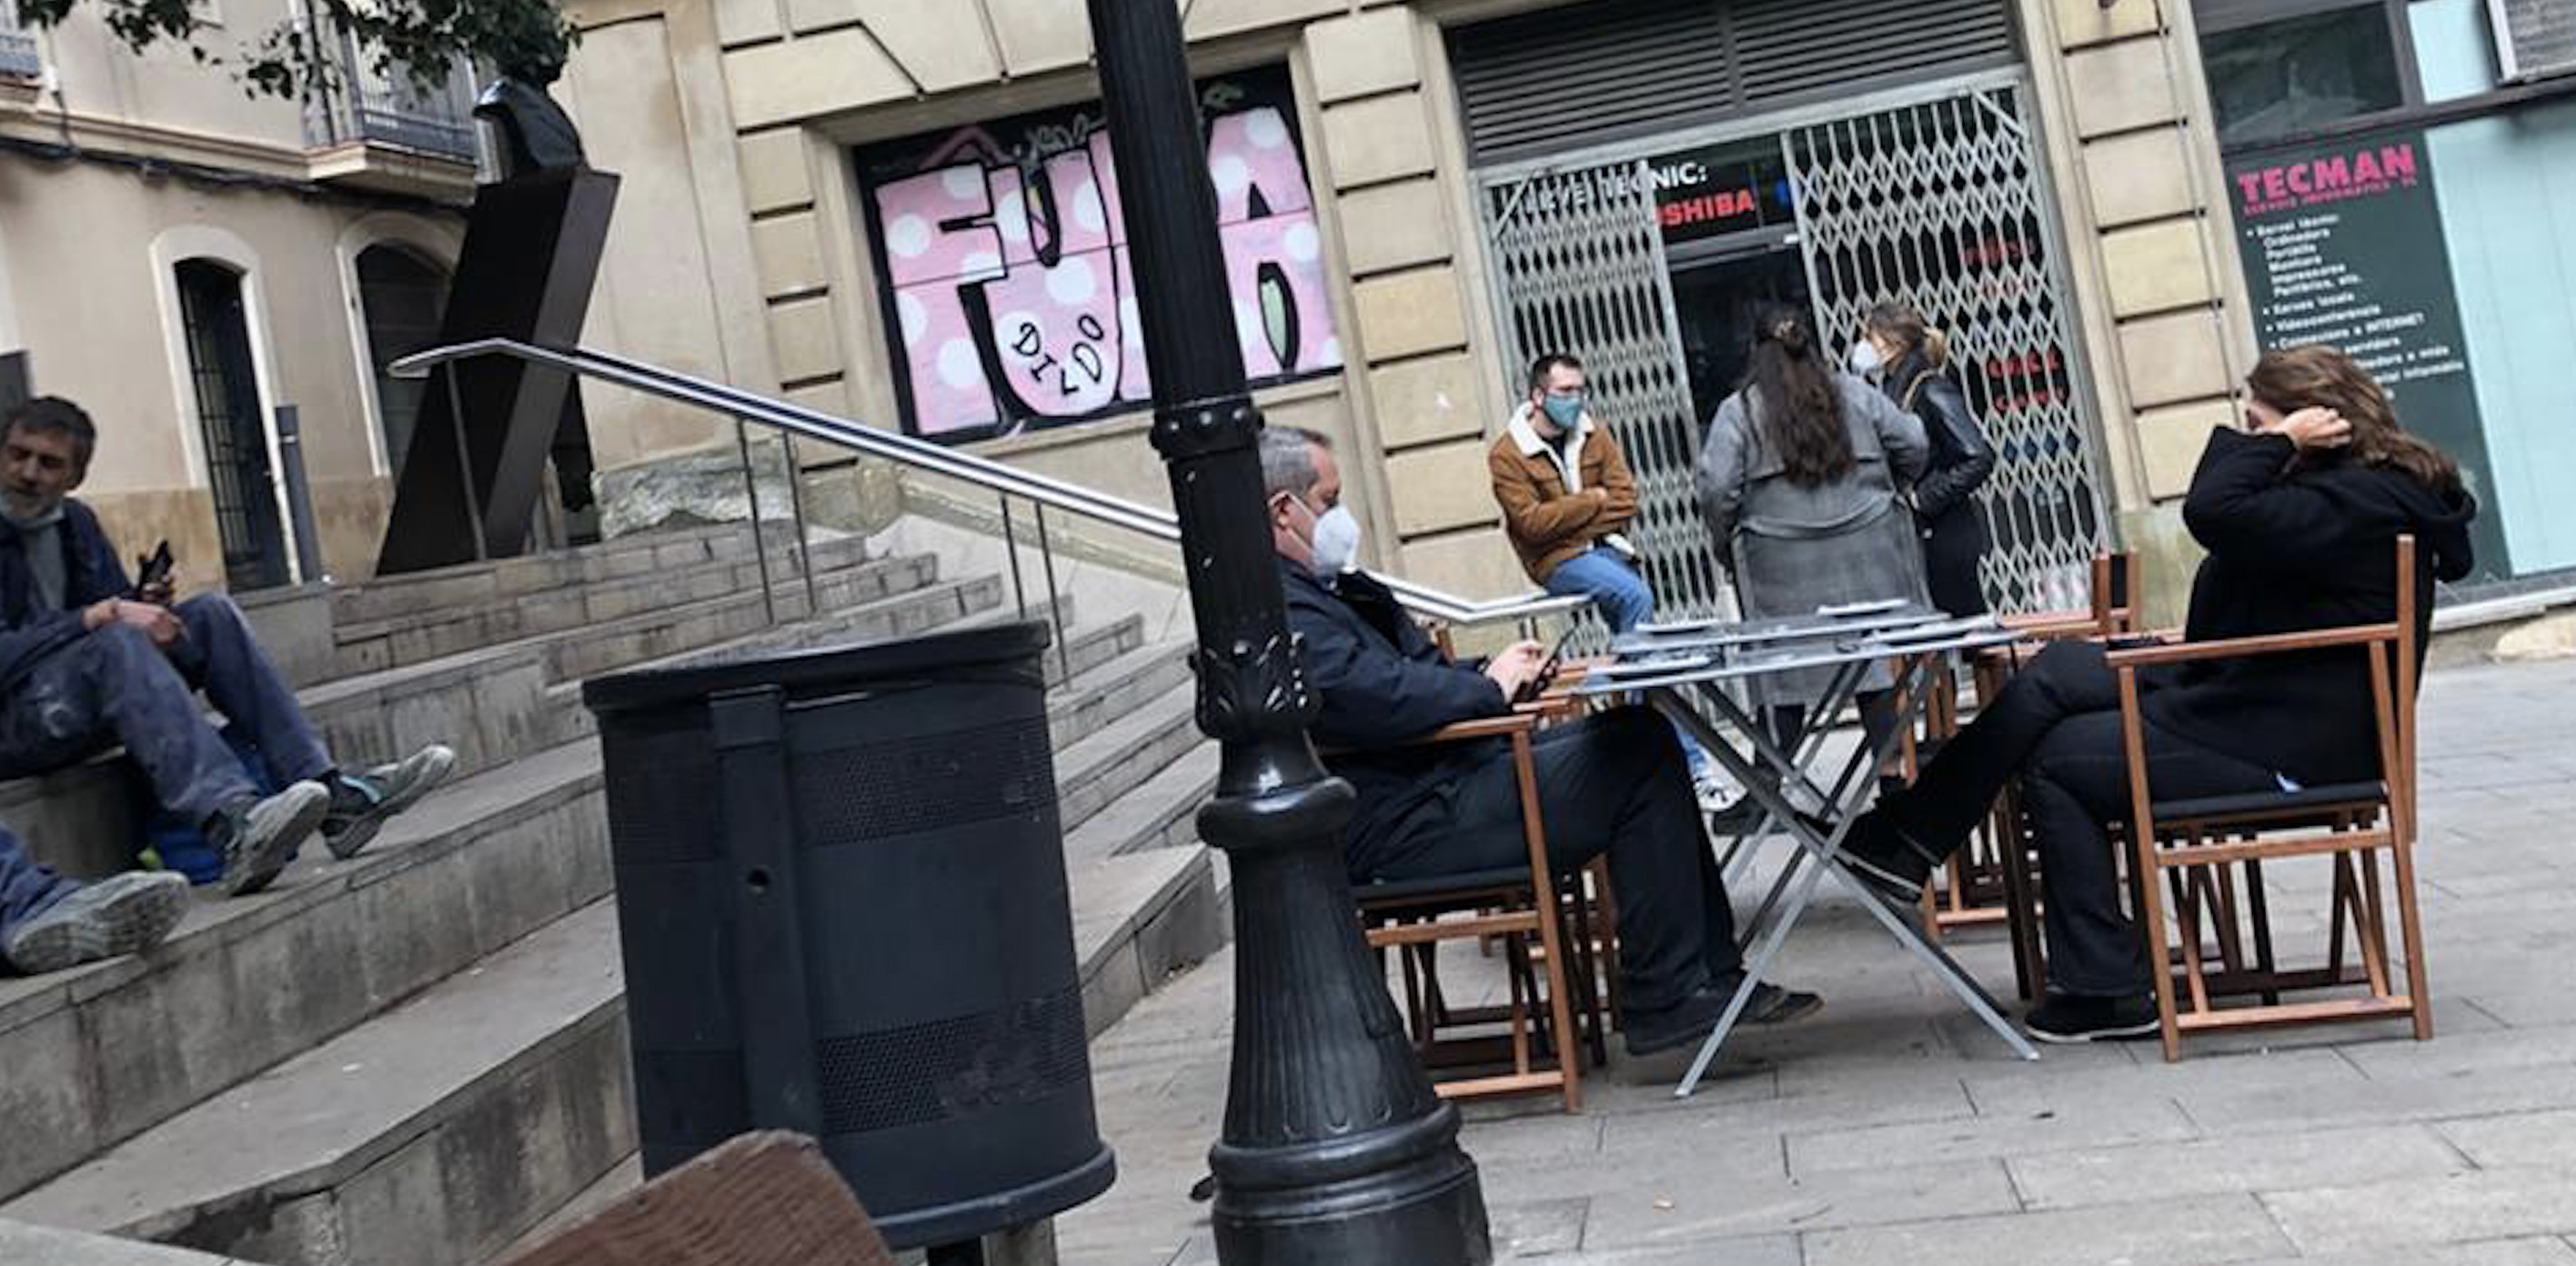 Quim Forn come en la terraza del restaurante Santa Gula en el barrio de Gràcia de Barcelona / CG